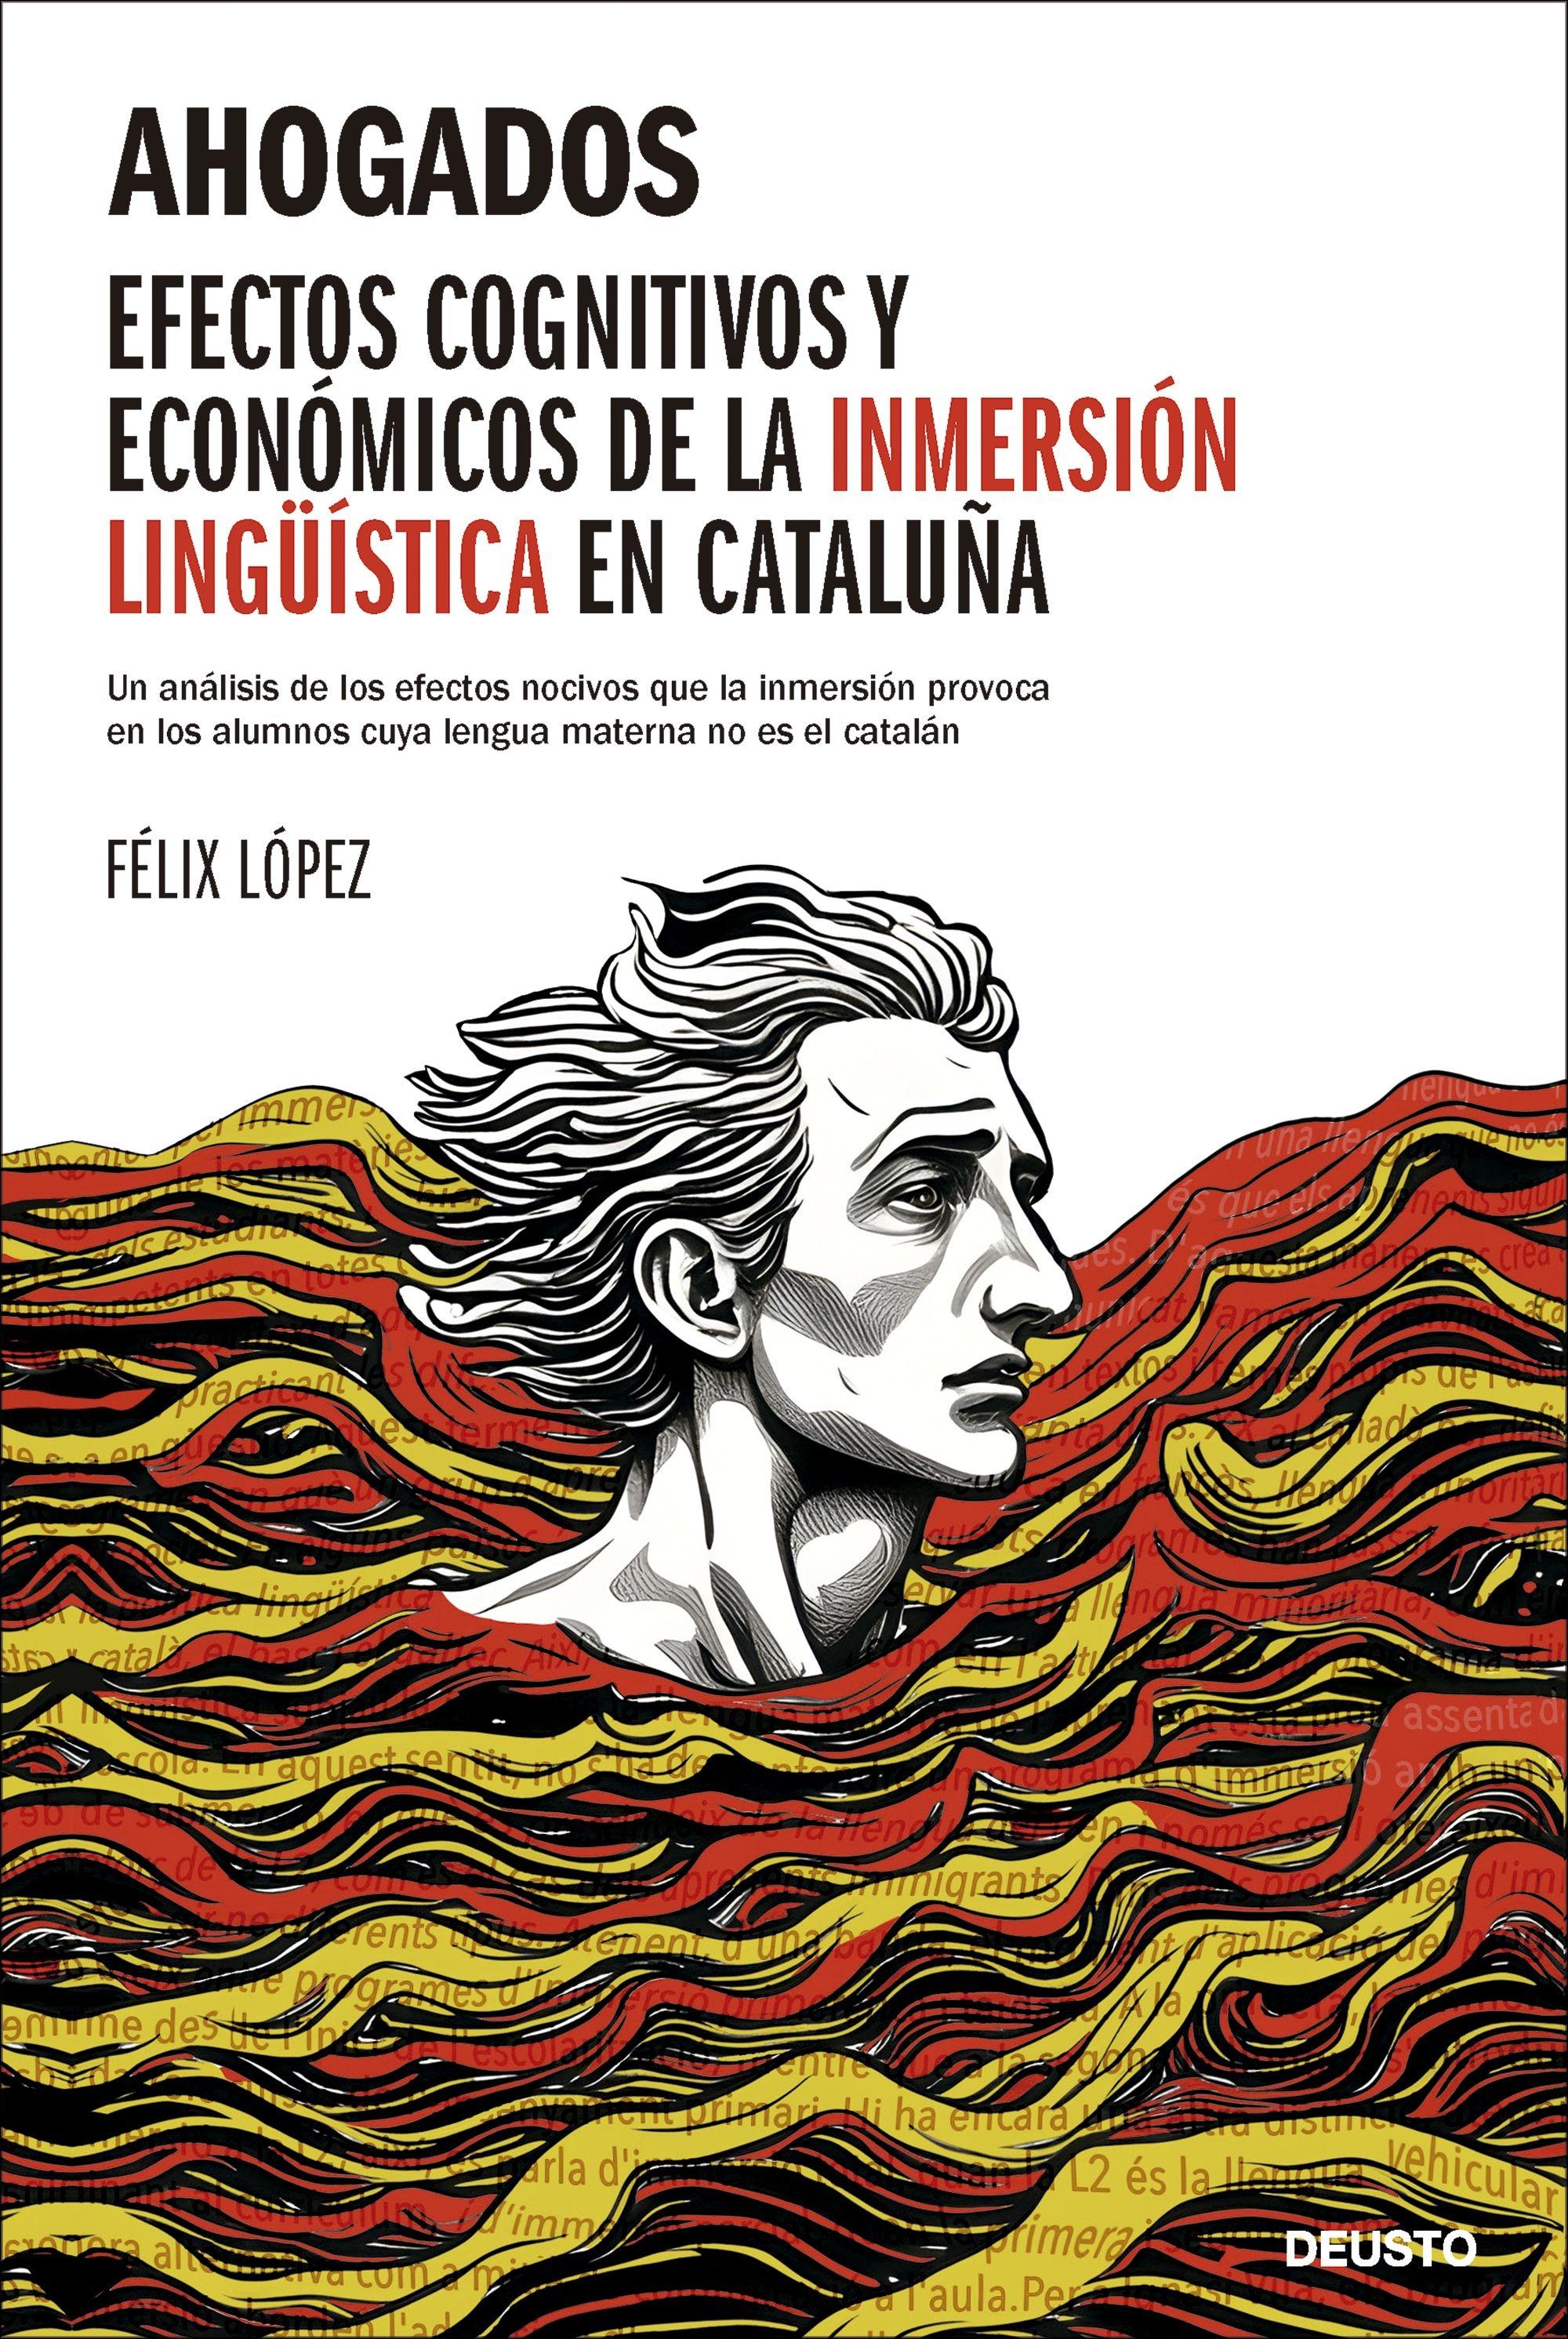 Ahogados "Efectos Cognitivos y Económicos de la Inmersión Lingüística en Cataluña". 